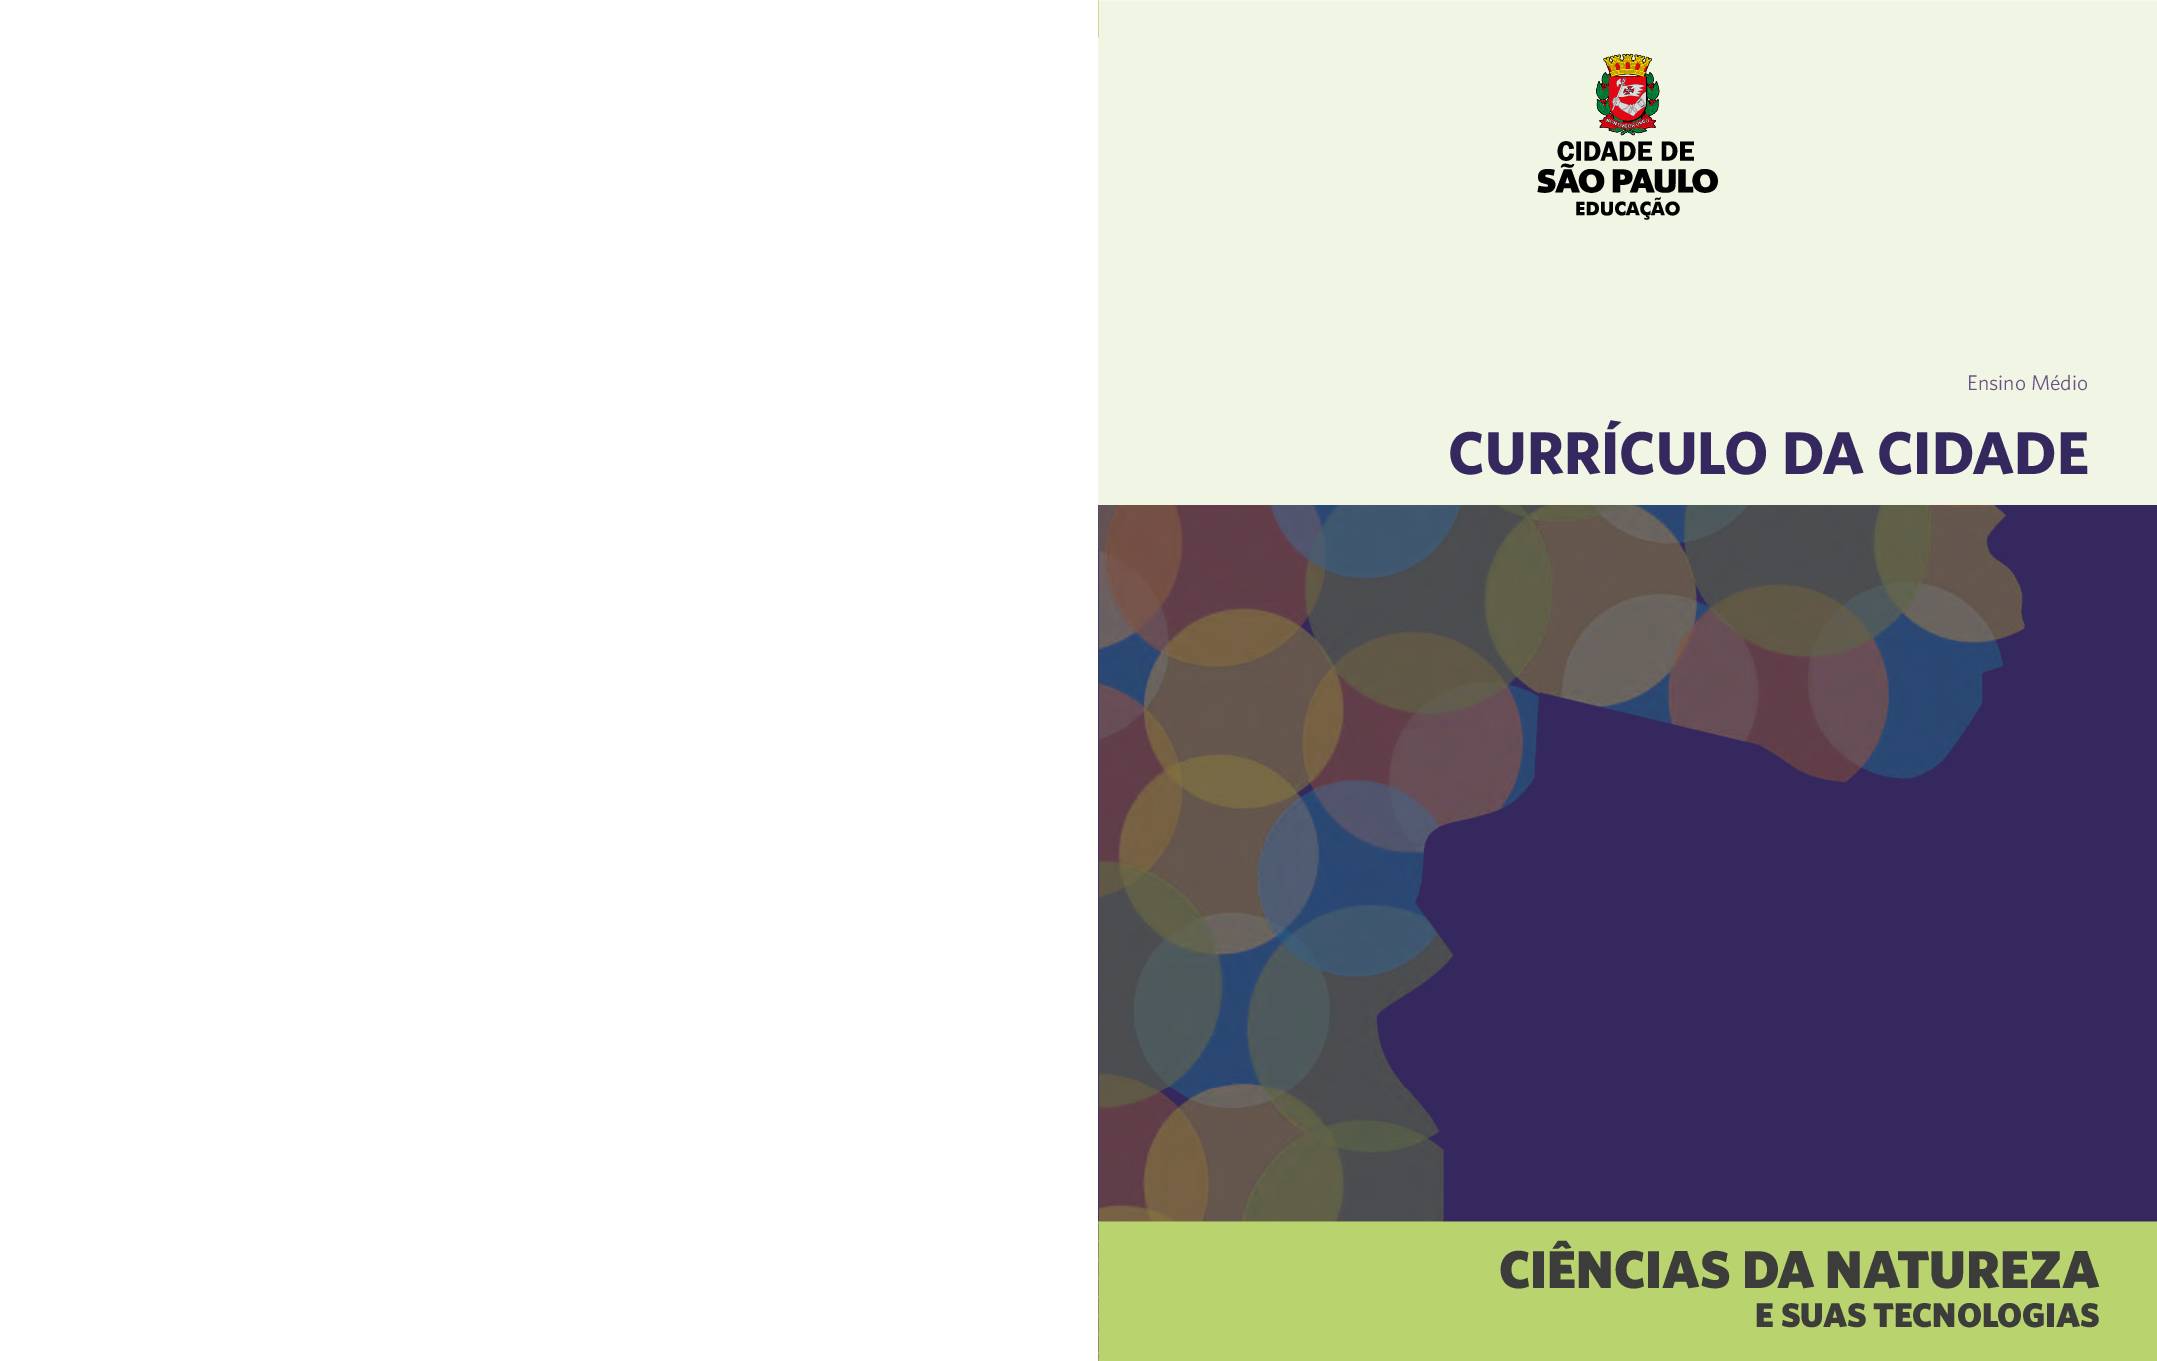 Currículo da Cidade para o Ensino Médio: área do conhecimento Ciências da Natureza e suas tecnologias.